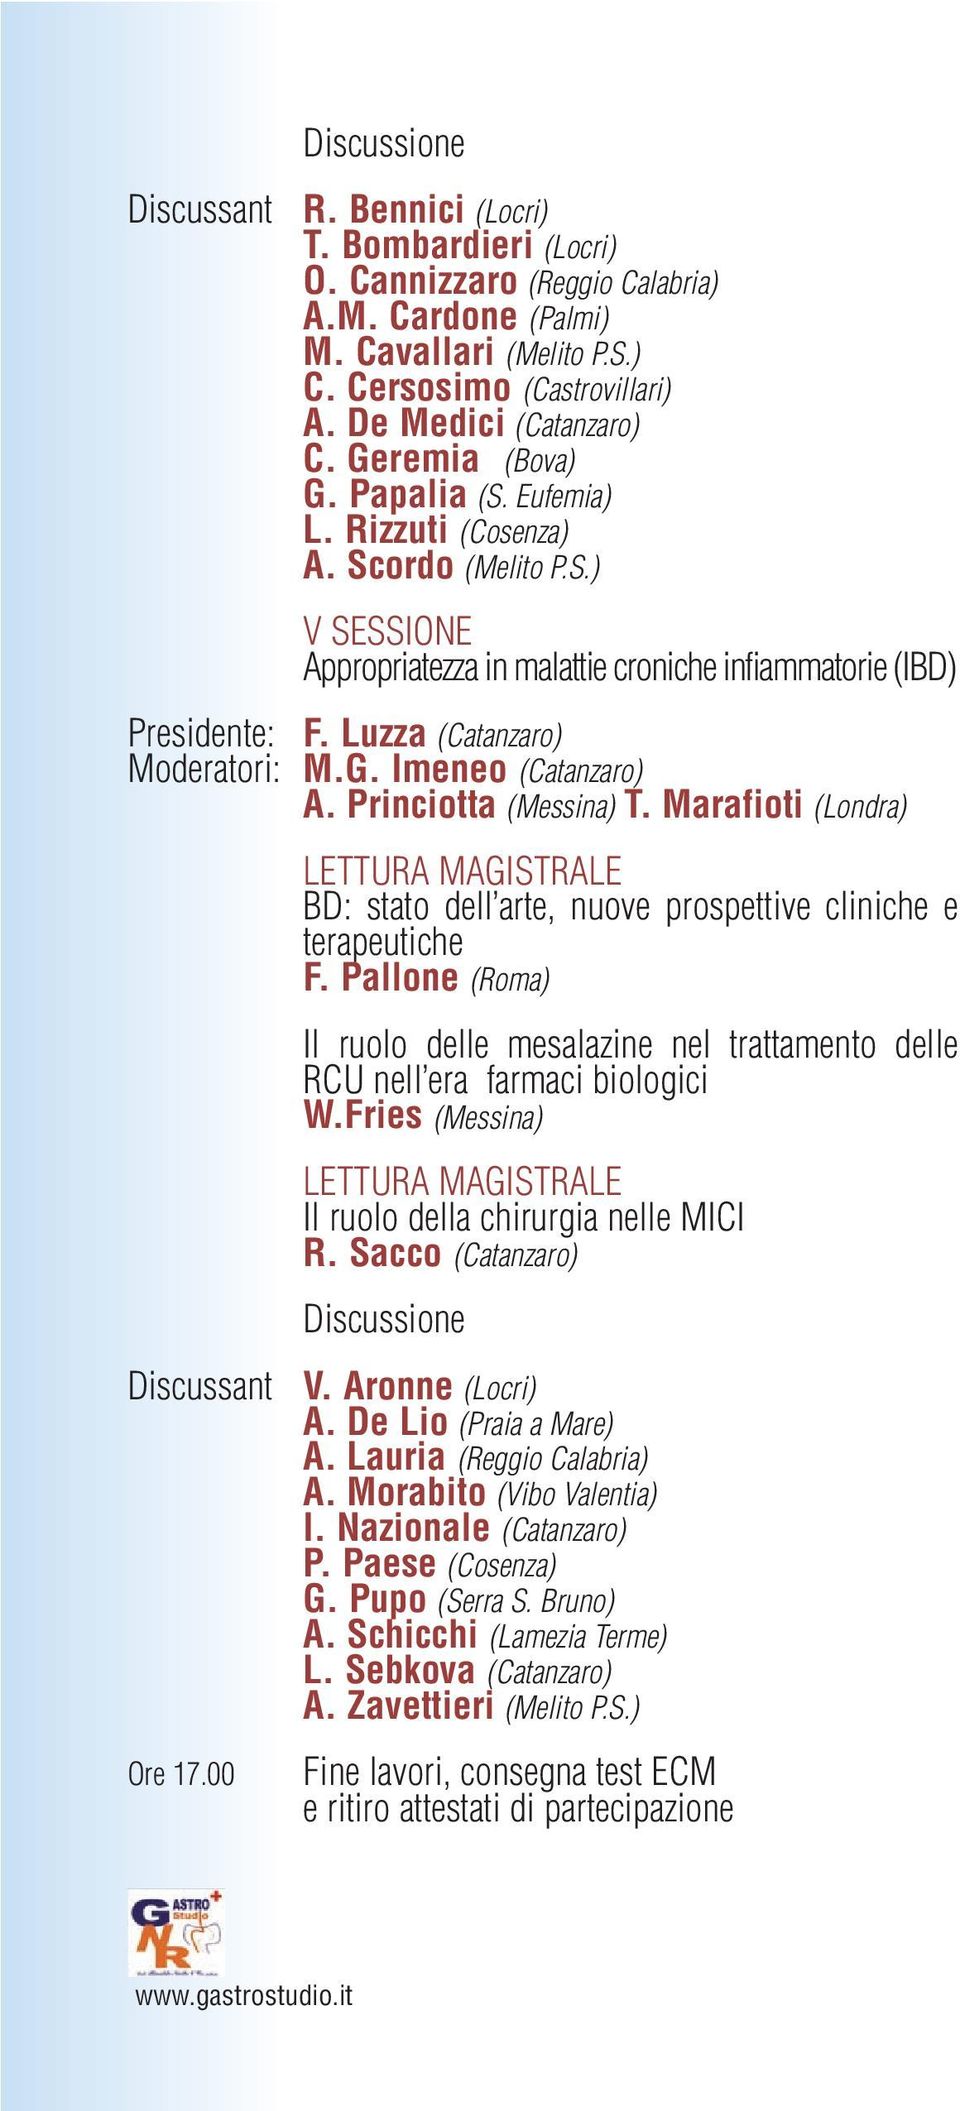 Luzza (Catanzaro) Moderatori: M.G. Imeneo (Catanzaro) A. Princiotta (Messina) T. Marafioti (Londra) Discussant Ore 17.